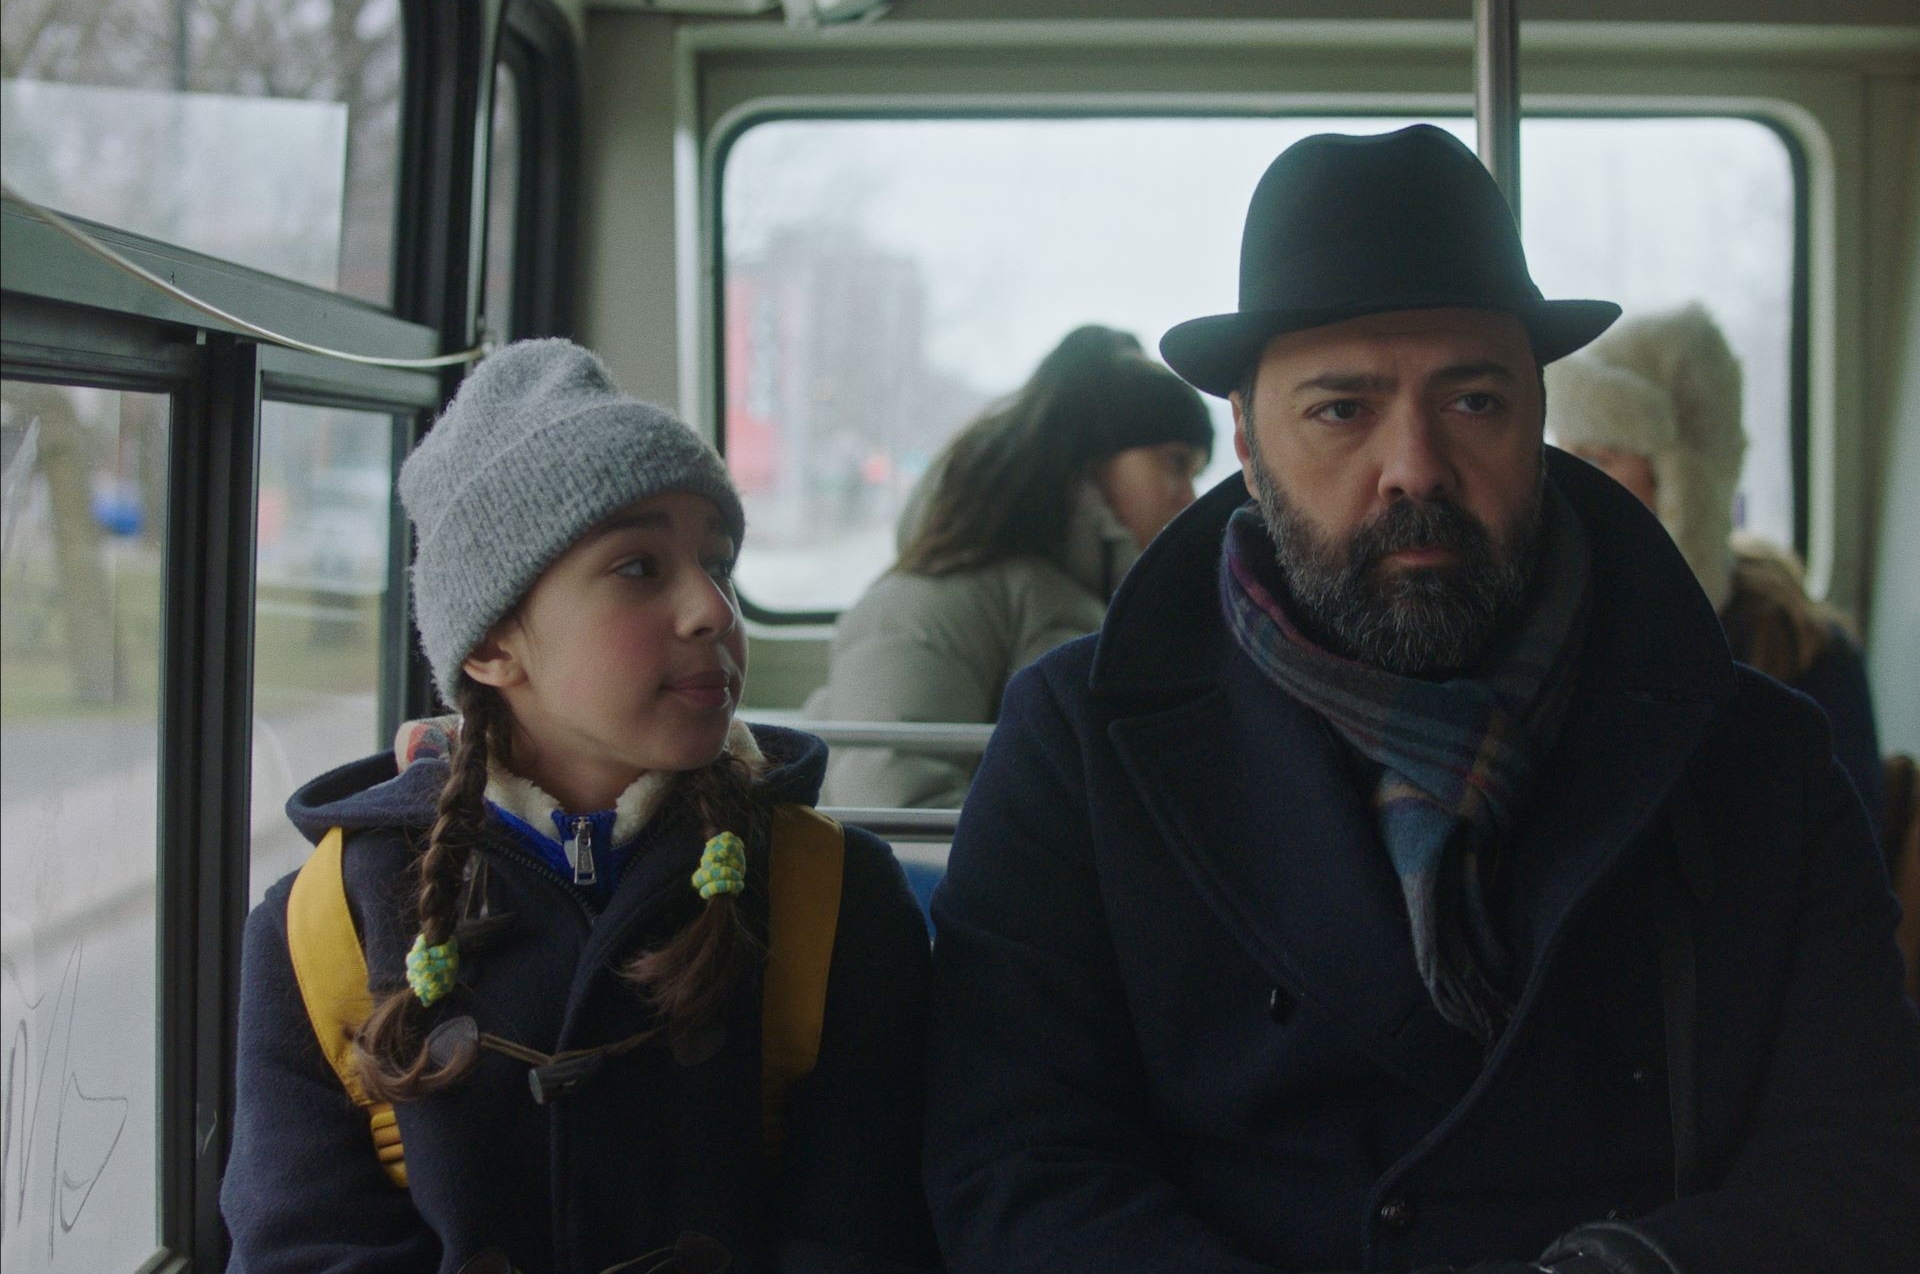 Une fille et un homme vêtus de vêtements d’hiver sont assis dans un bus. La jeune fille porte une tuque grise et regarde l'homme qui porte un chapeau noir.